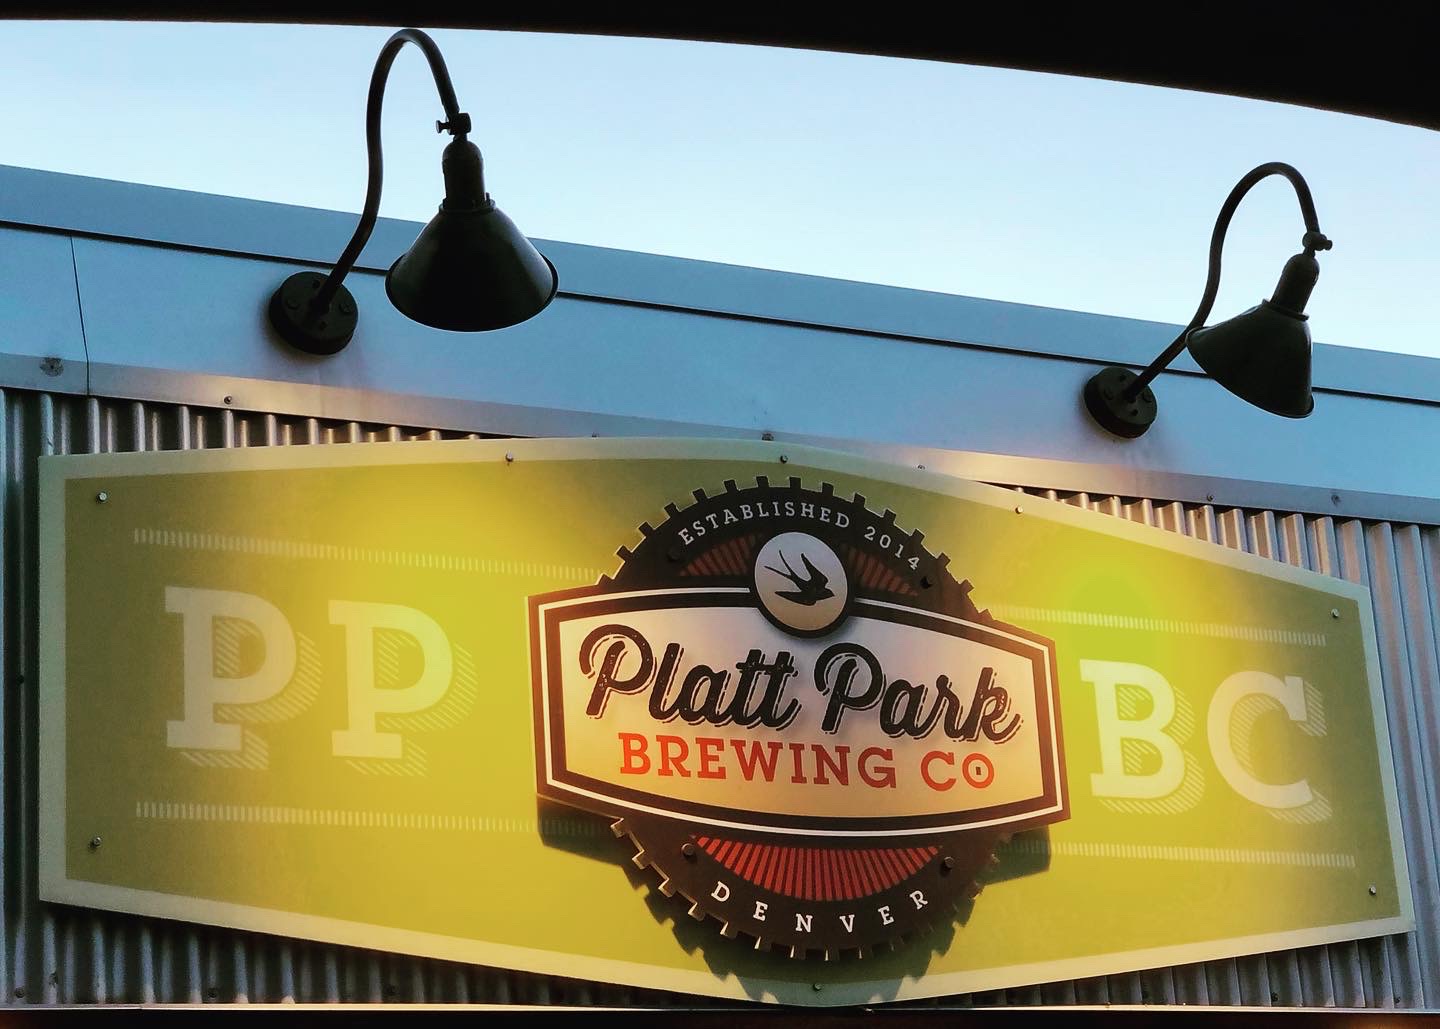 platt park brewing sign out front